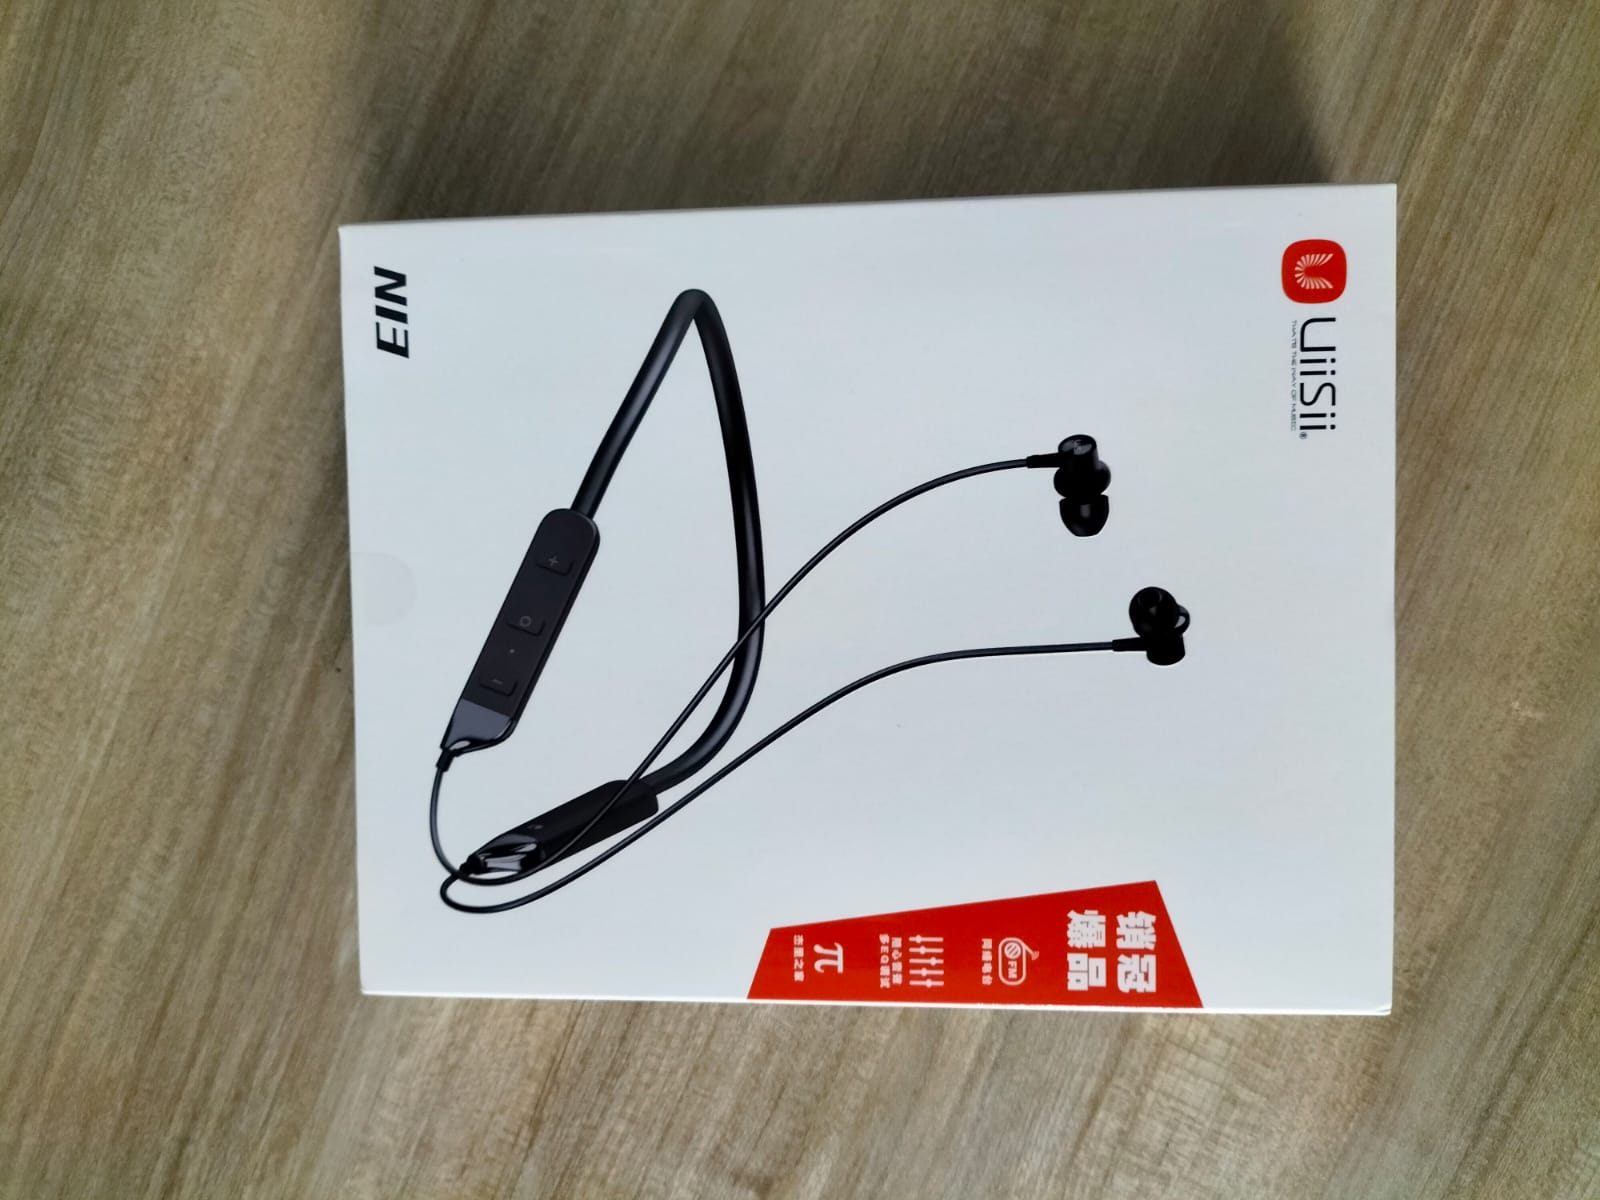 UiiSii N13 Neck-Mounted Bluetooth Earphone